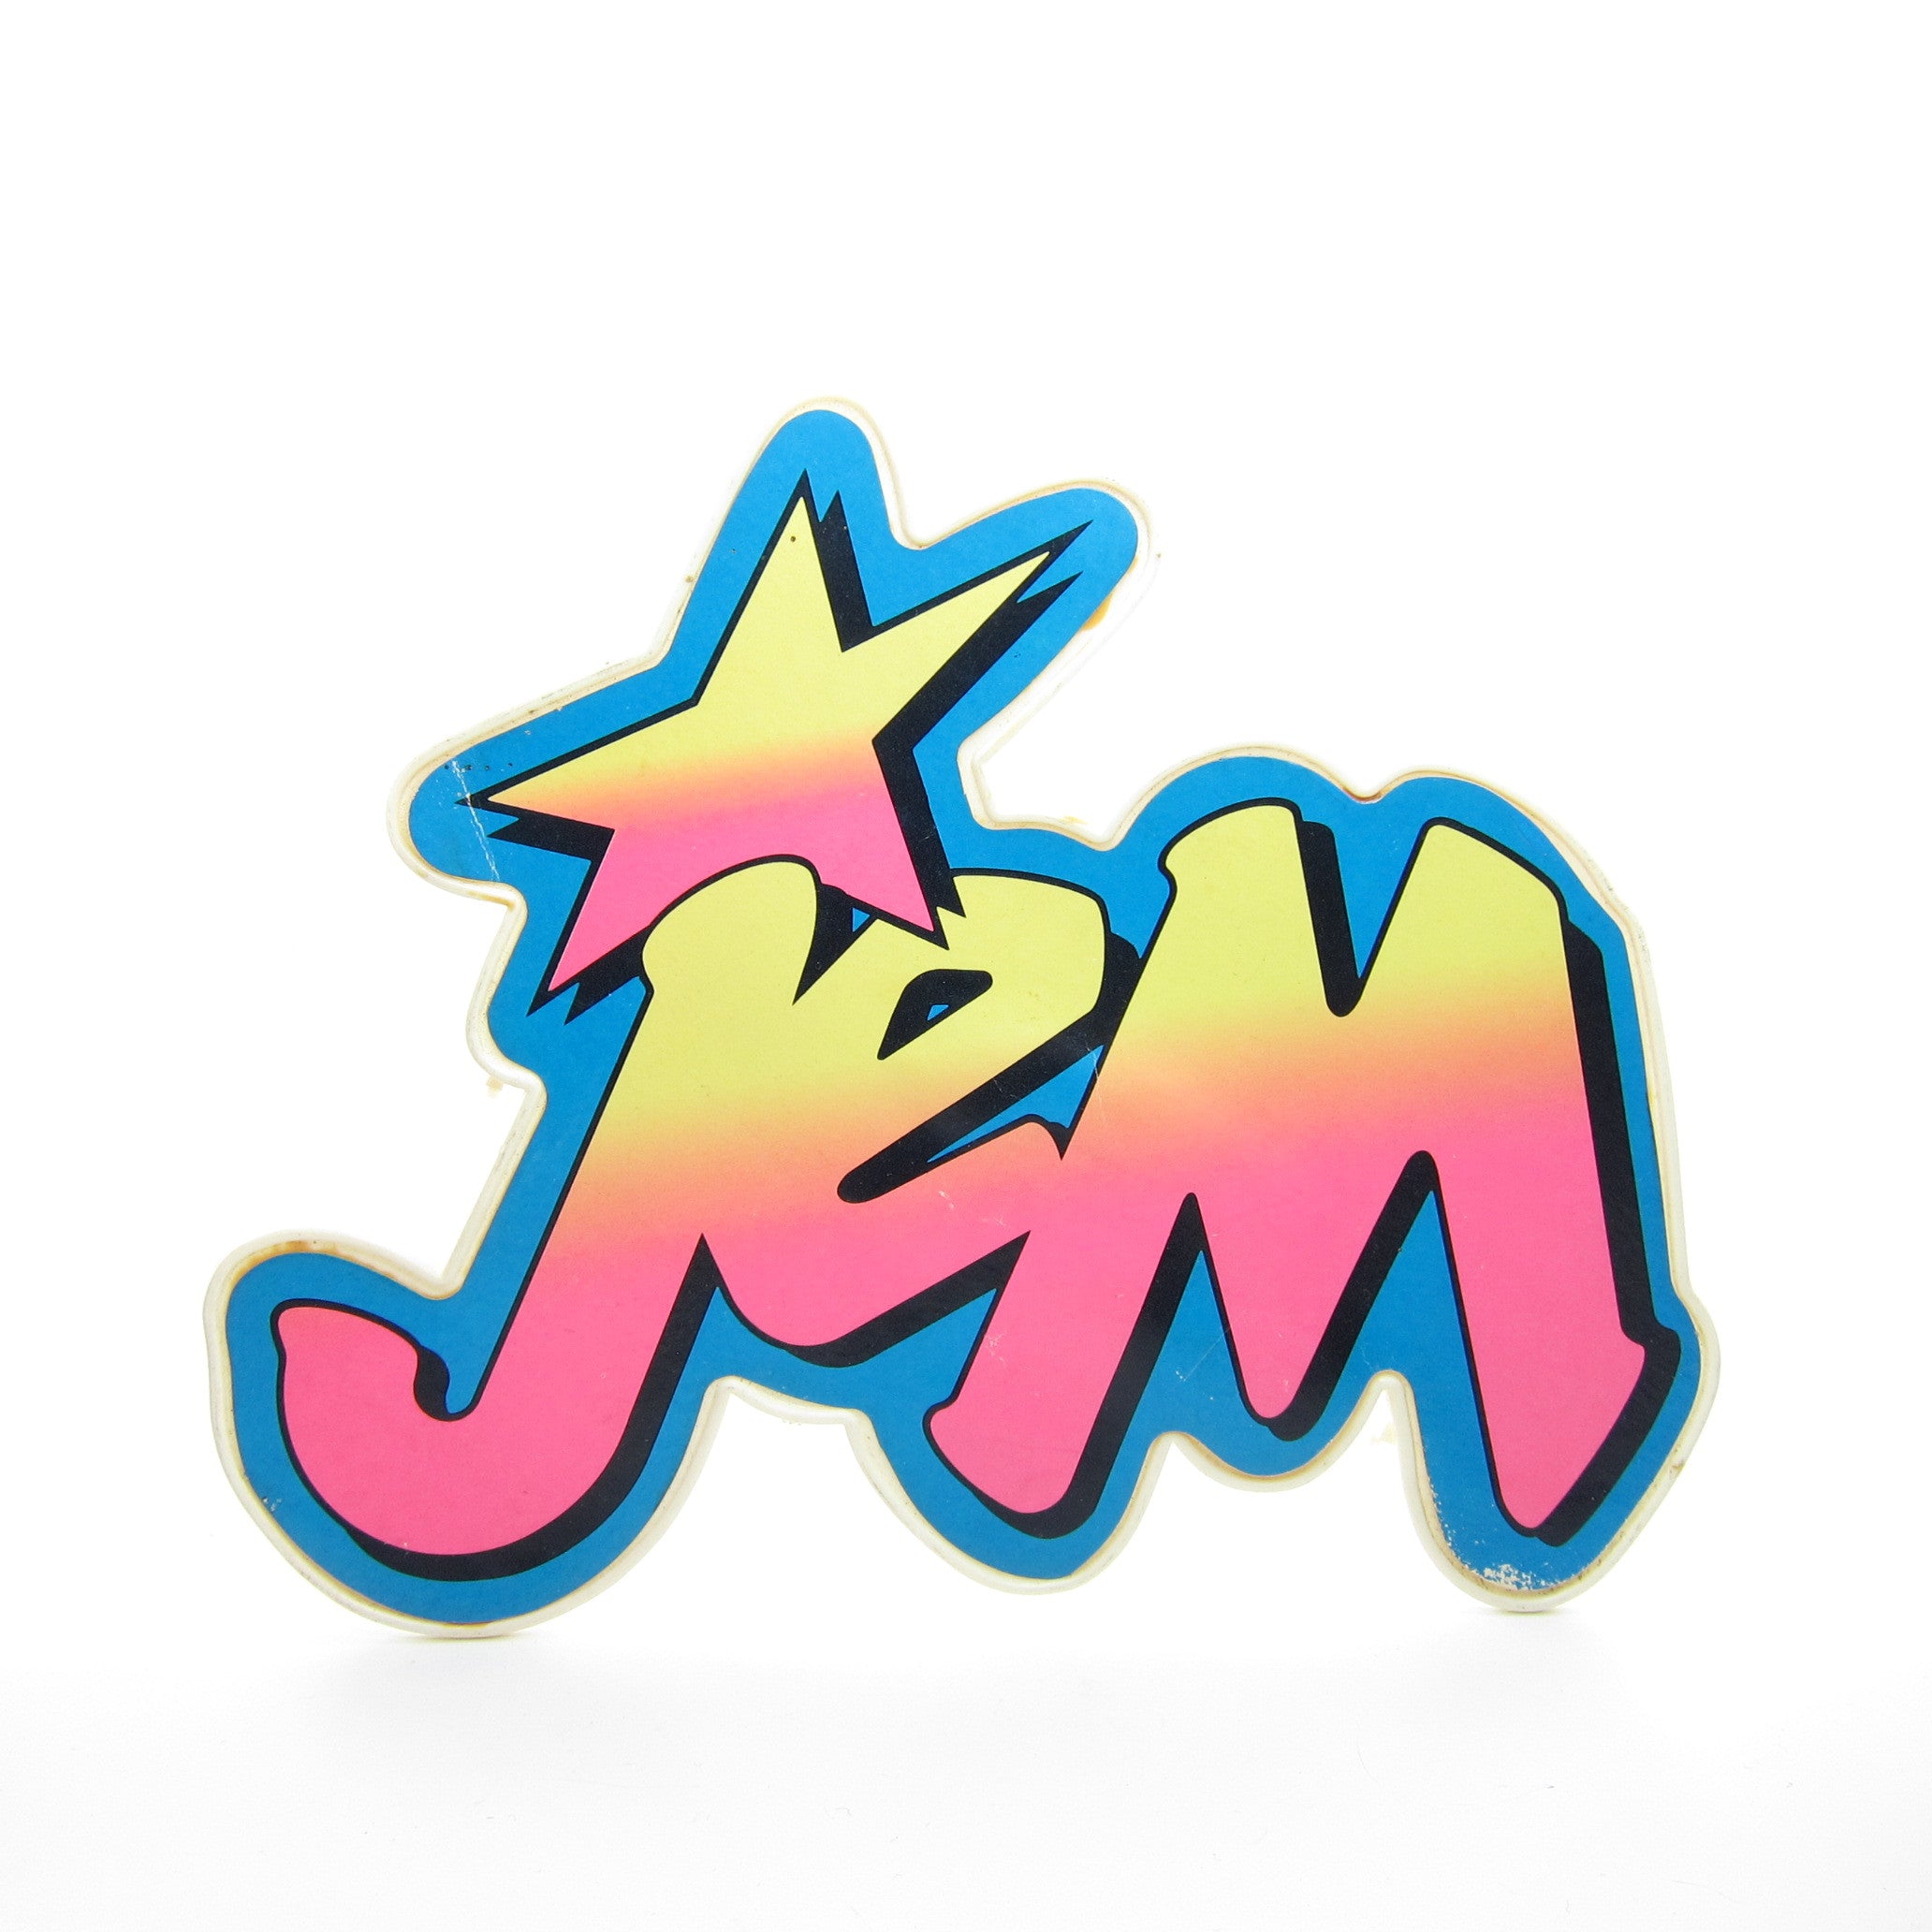 Jem Star Stage logo piece